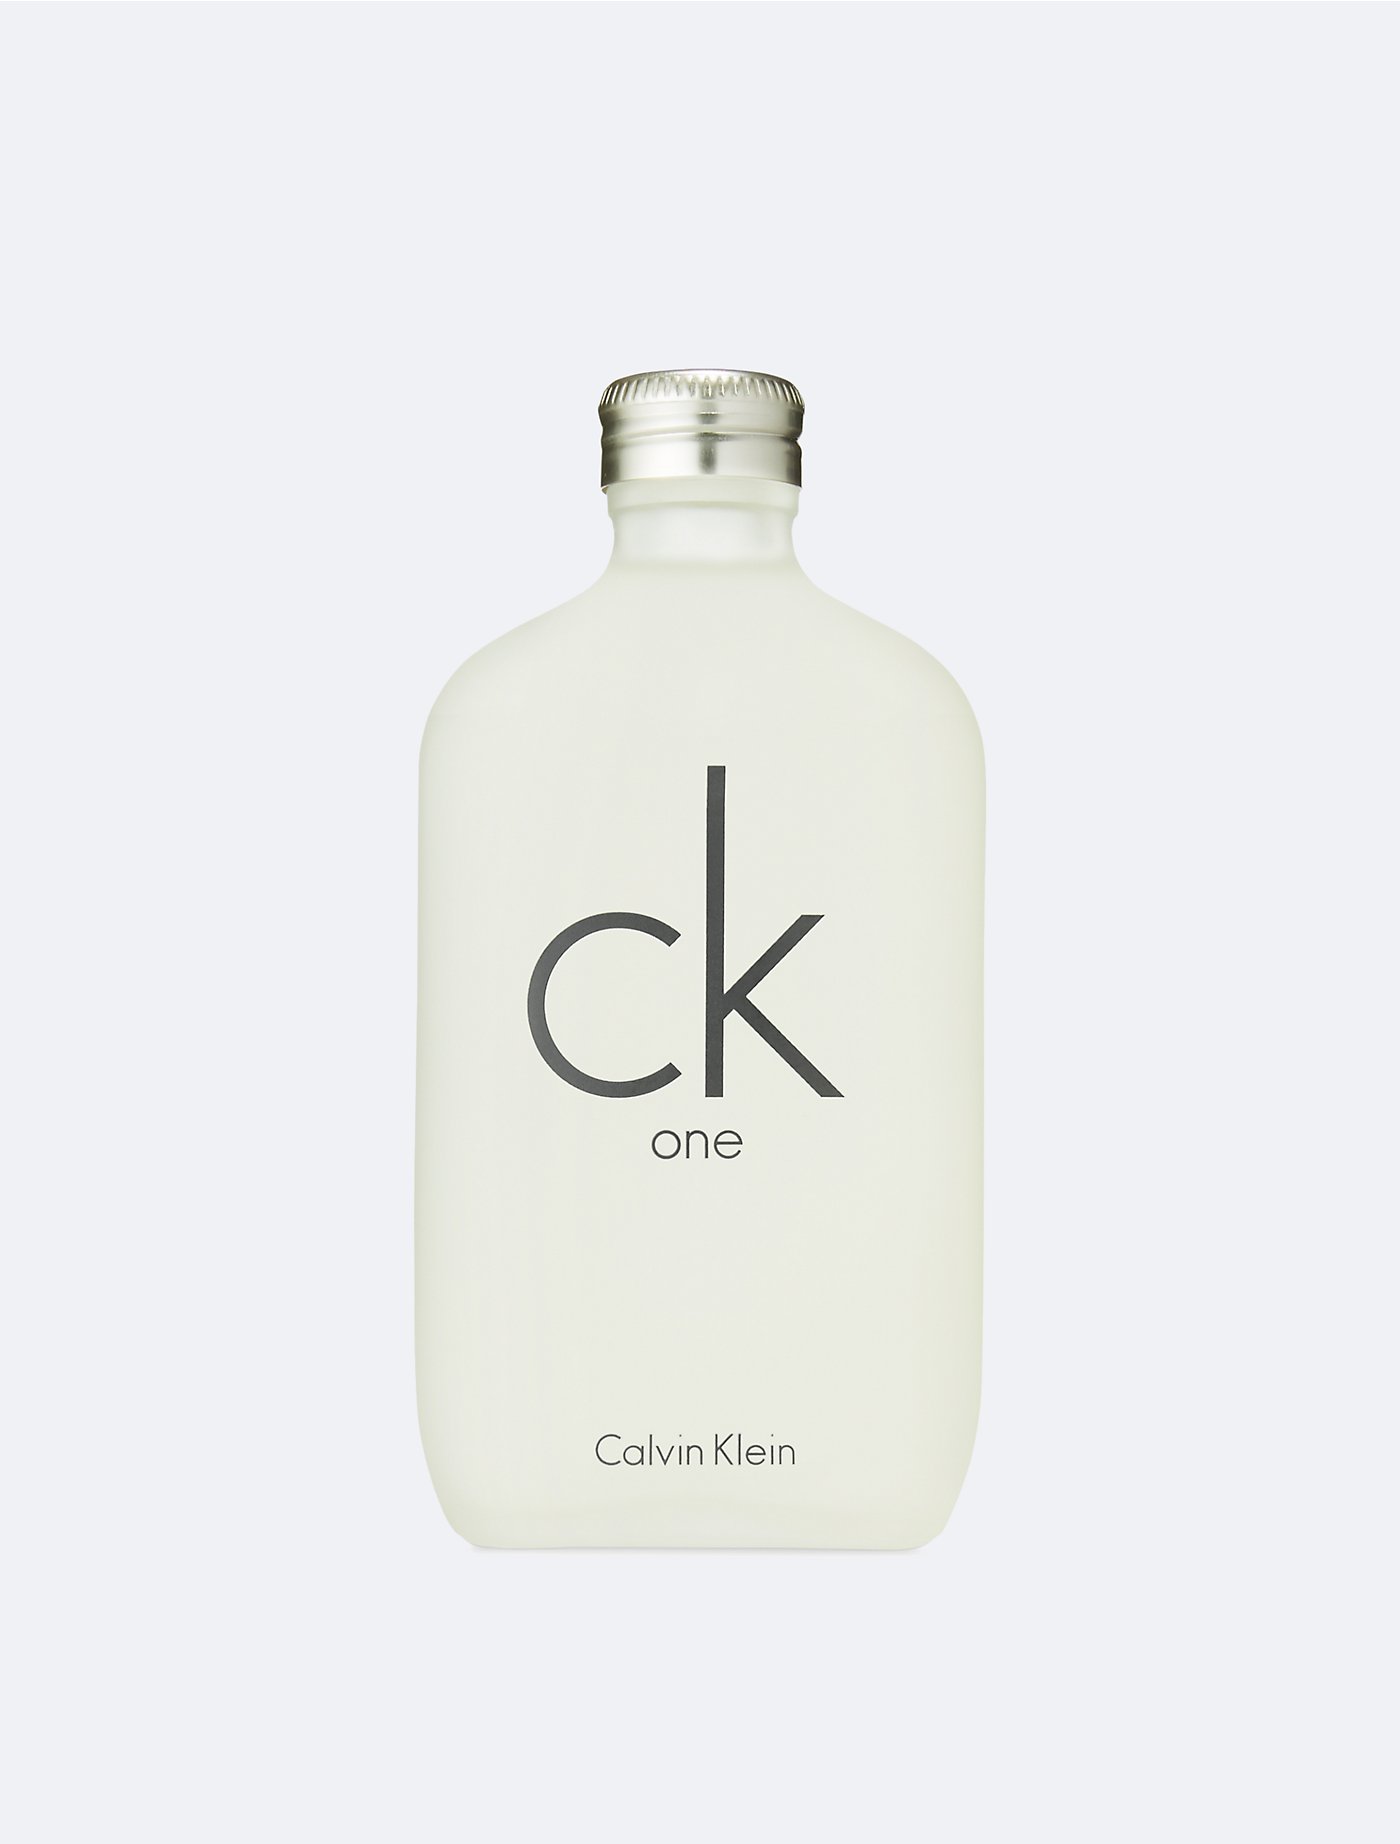 Millimeter ingenieur Ambient CK ONE | Calvin Klein